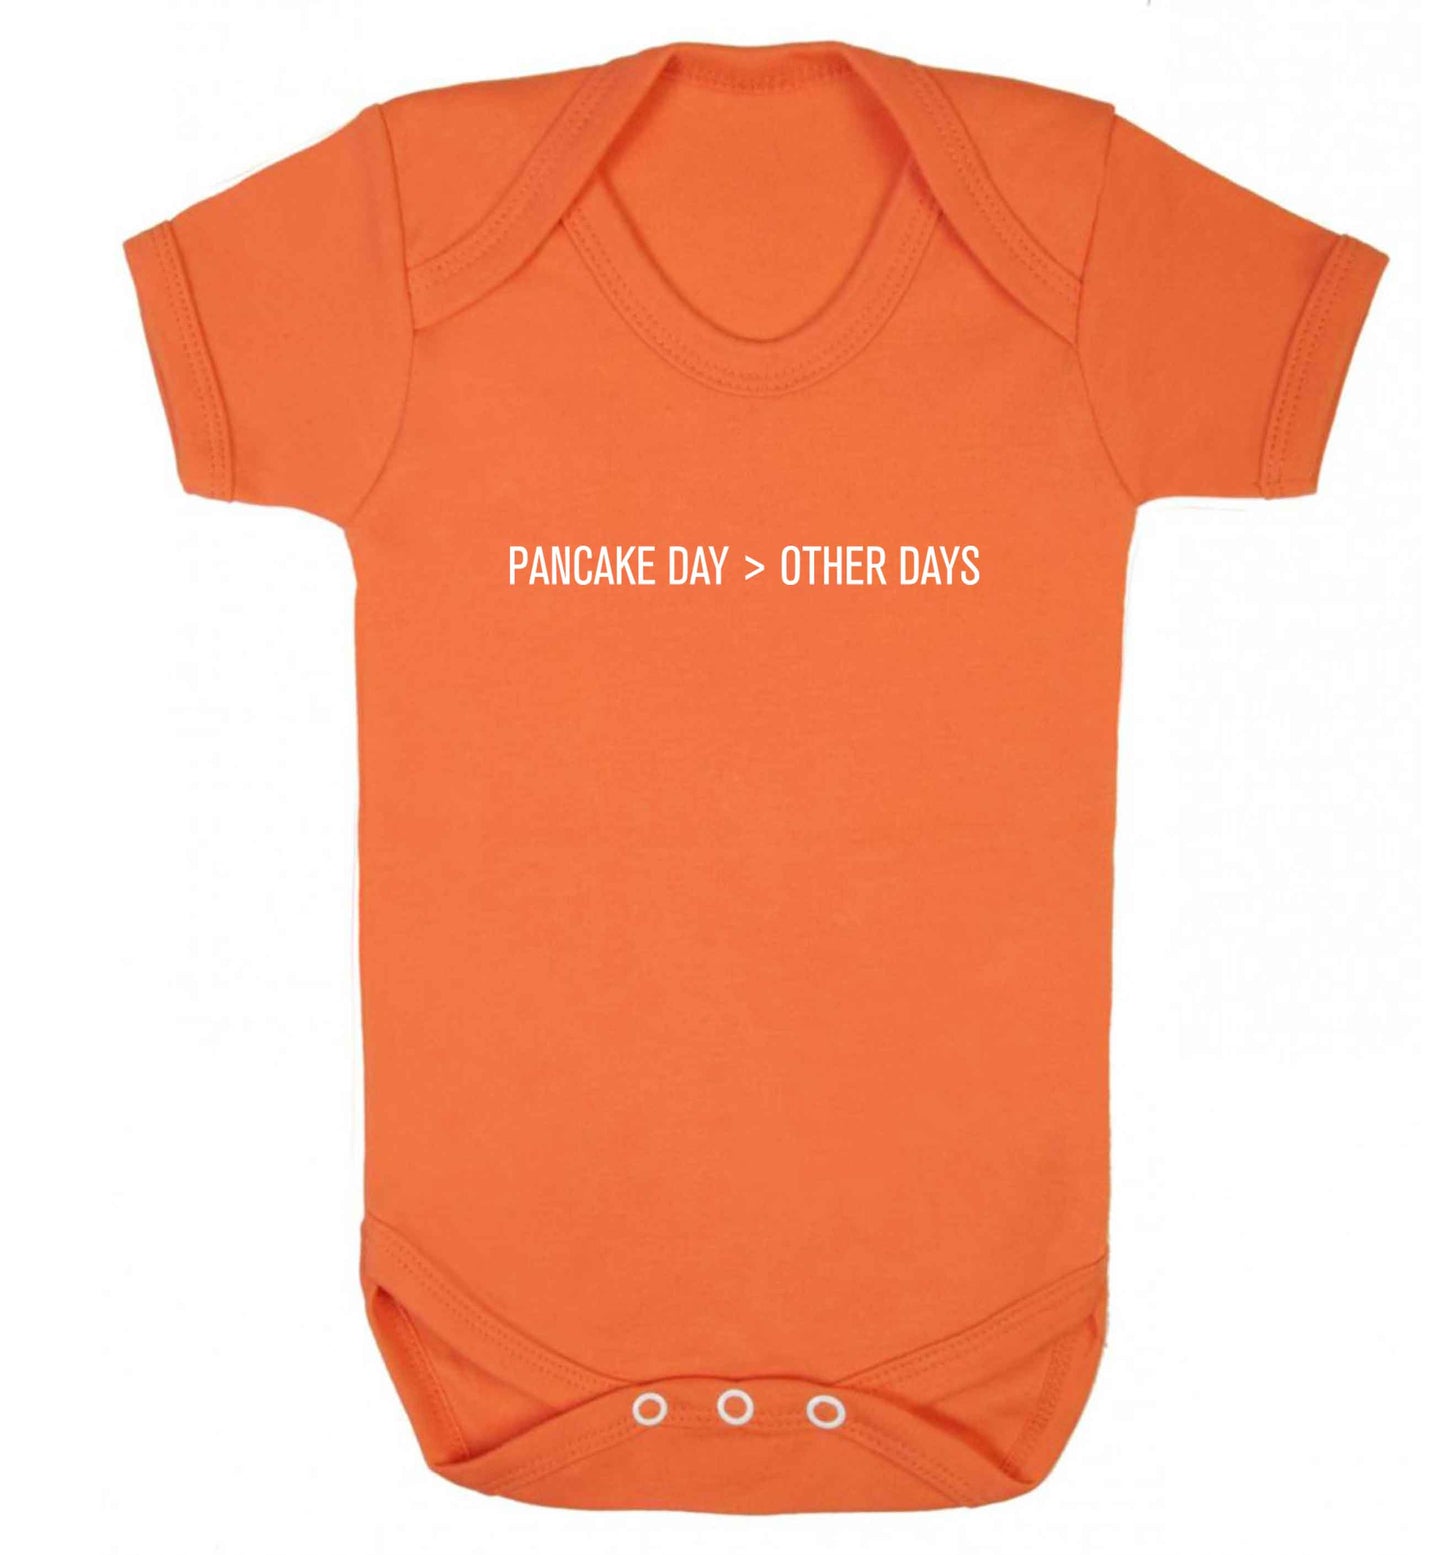 Pancake day > other days baby vest orange 18-24 months